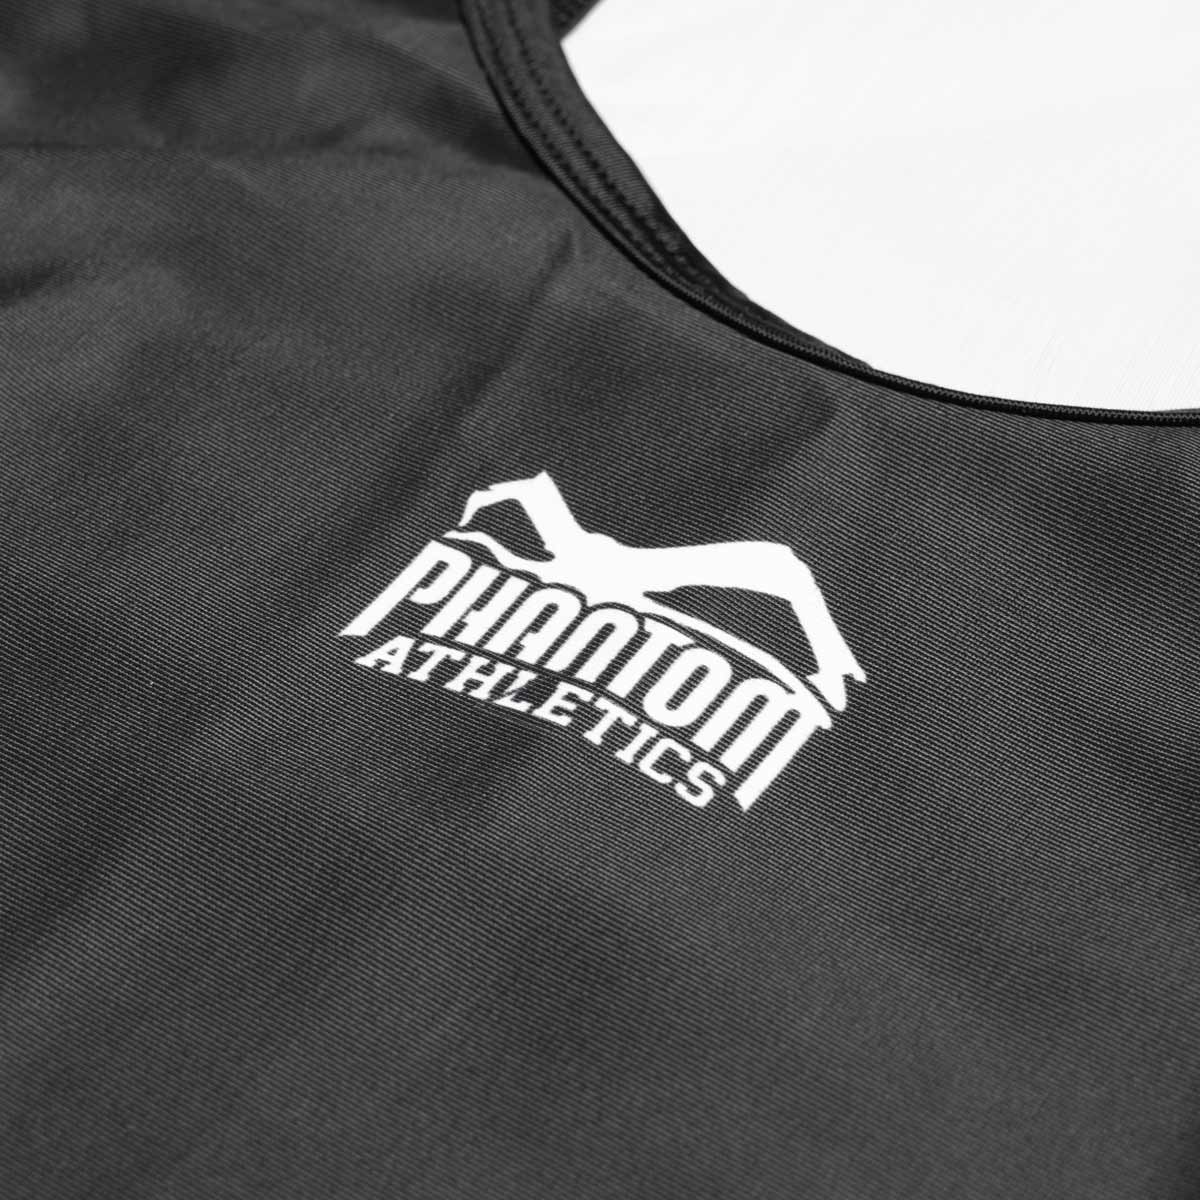 Phantom Ringertrikot Apex in der Farbe Schwarz. Ideal für dein Ringer Training. In hervorragender Passform und Haltbarkeit.